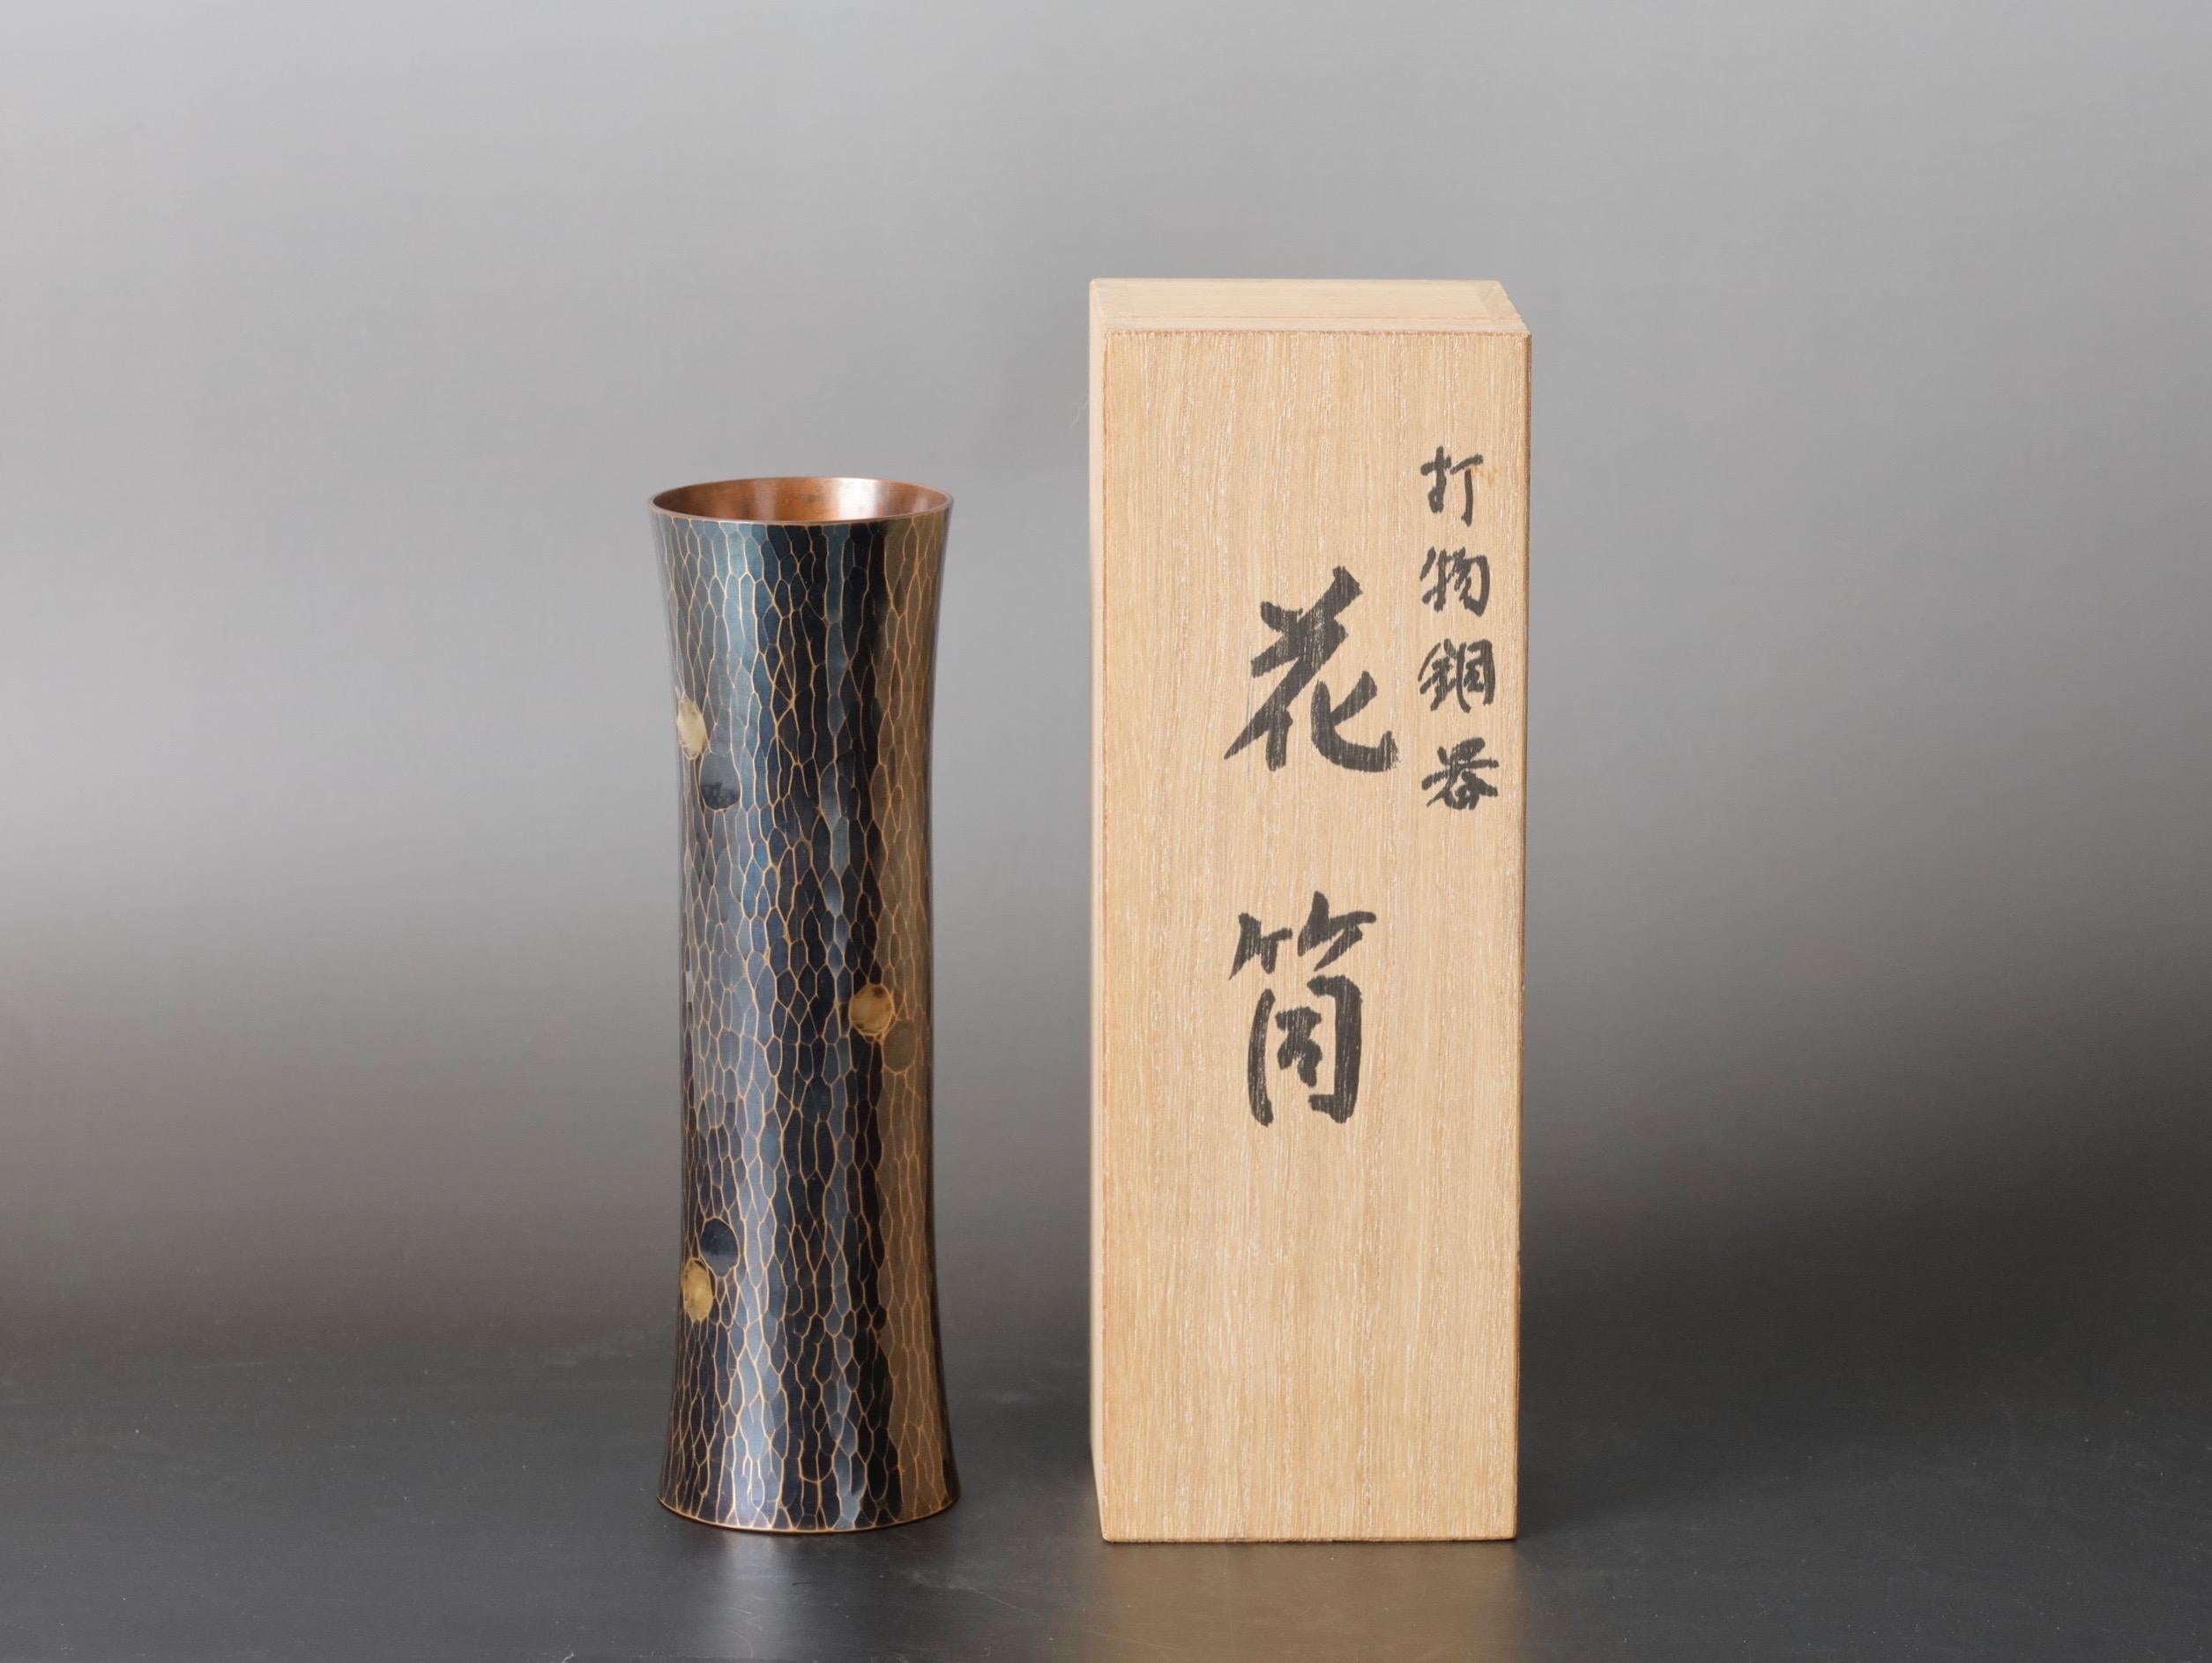 Ce vase en cuivre exquis est une pièce unique du Japon, martelée à la main au XXe siècle par Kyuhoudou. Le vase a une hauteur de 18 cm (7 pouces), un diamètre de 5,5 cm (2,1 pouces) et pèse 360 g (0,8 lbs). Il est livré avec sa boîte en bois